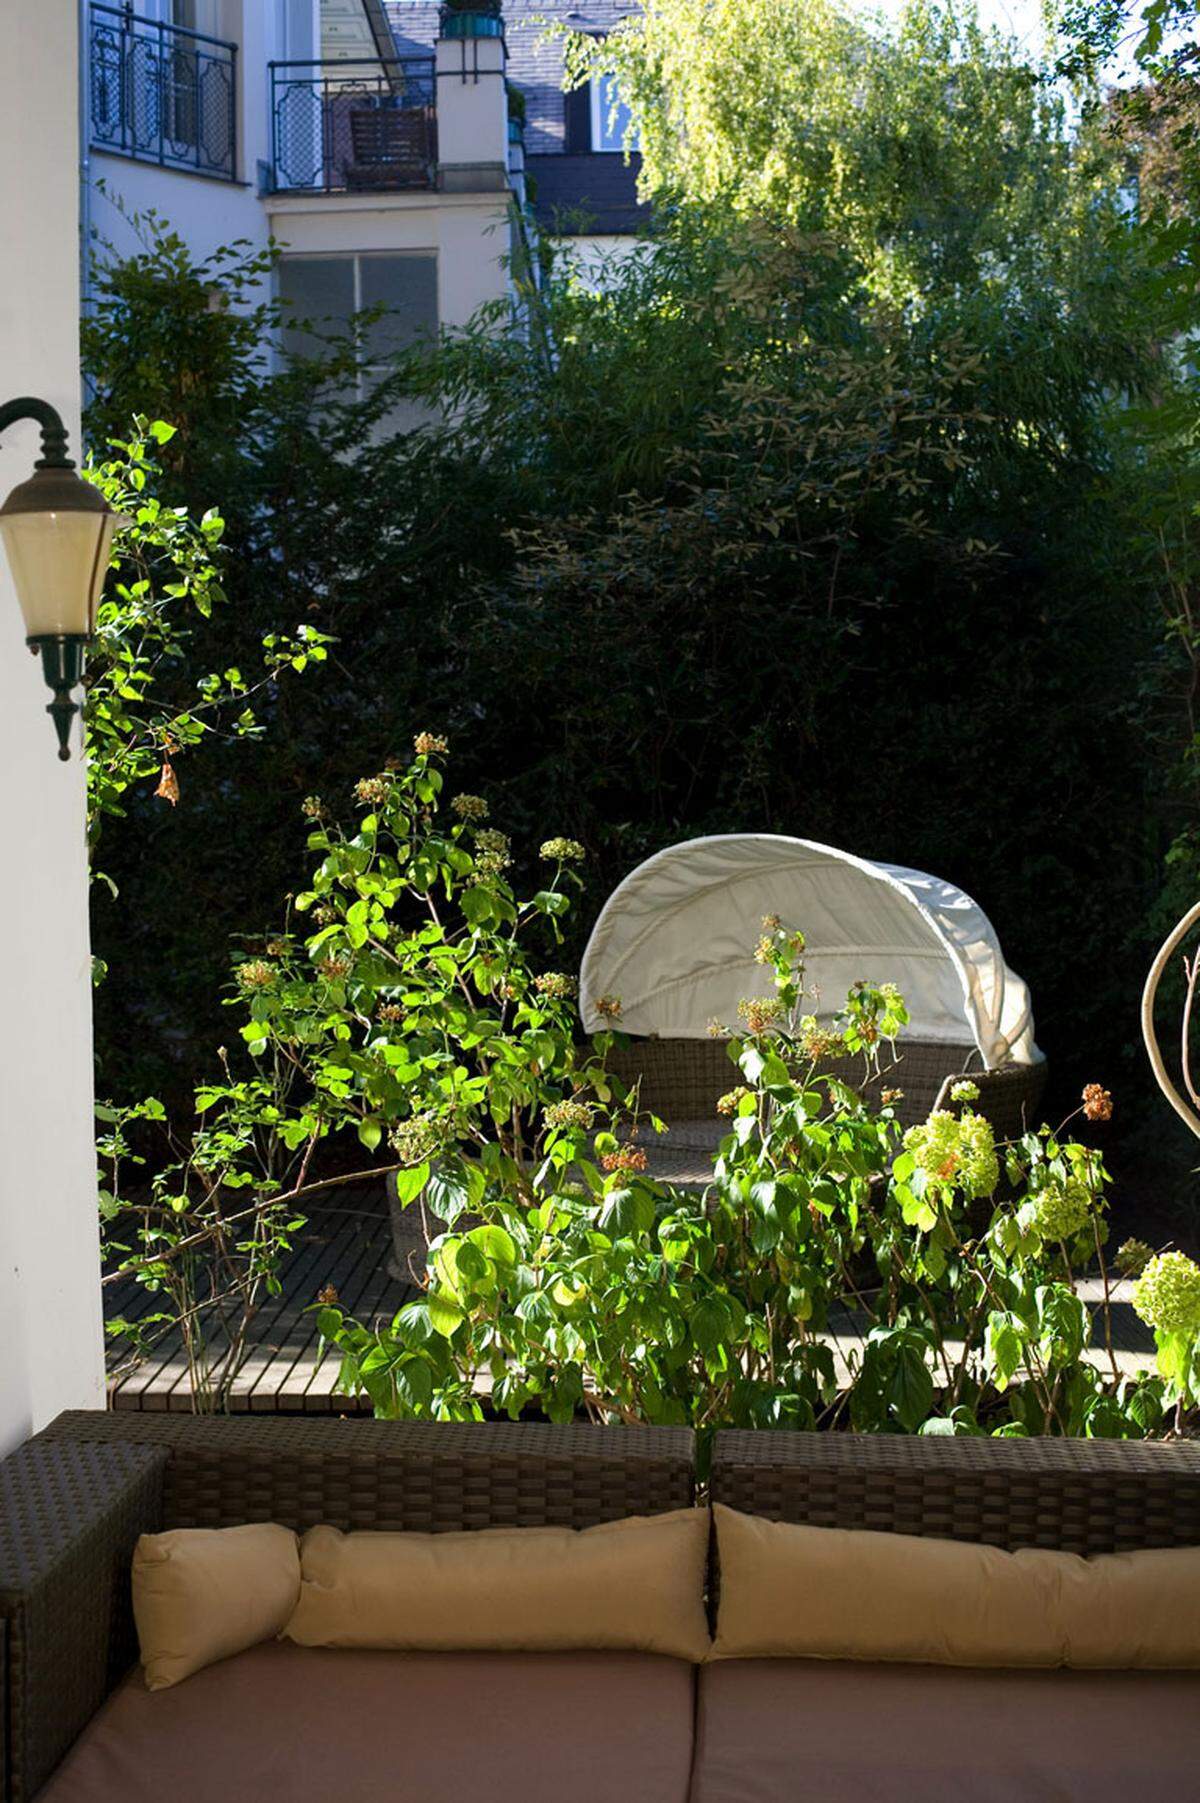 Die Terrasse hat den romantischen Charme eines Wiener Cottages. Nicht perfekt getrimmt, wirkt der Garten nicht amerikanisch laut, sondern eher europäisch leise. Dieser Mix aus Luxus und Tradition ist es, was Canisius zu Hause umsetzen möchte.